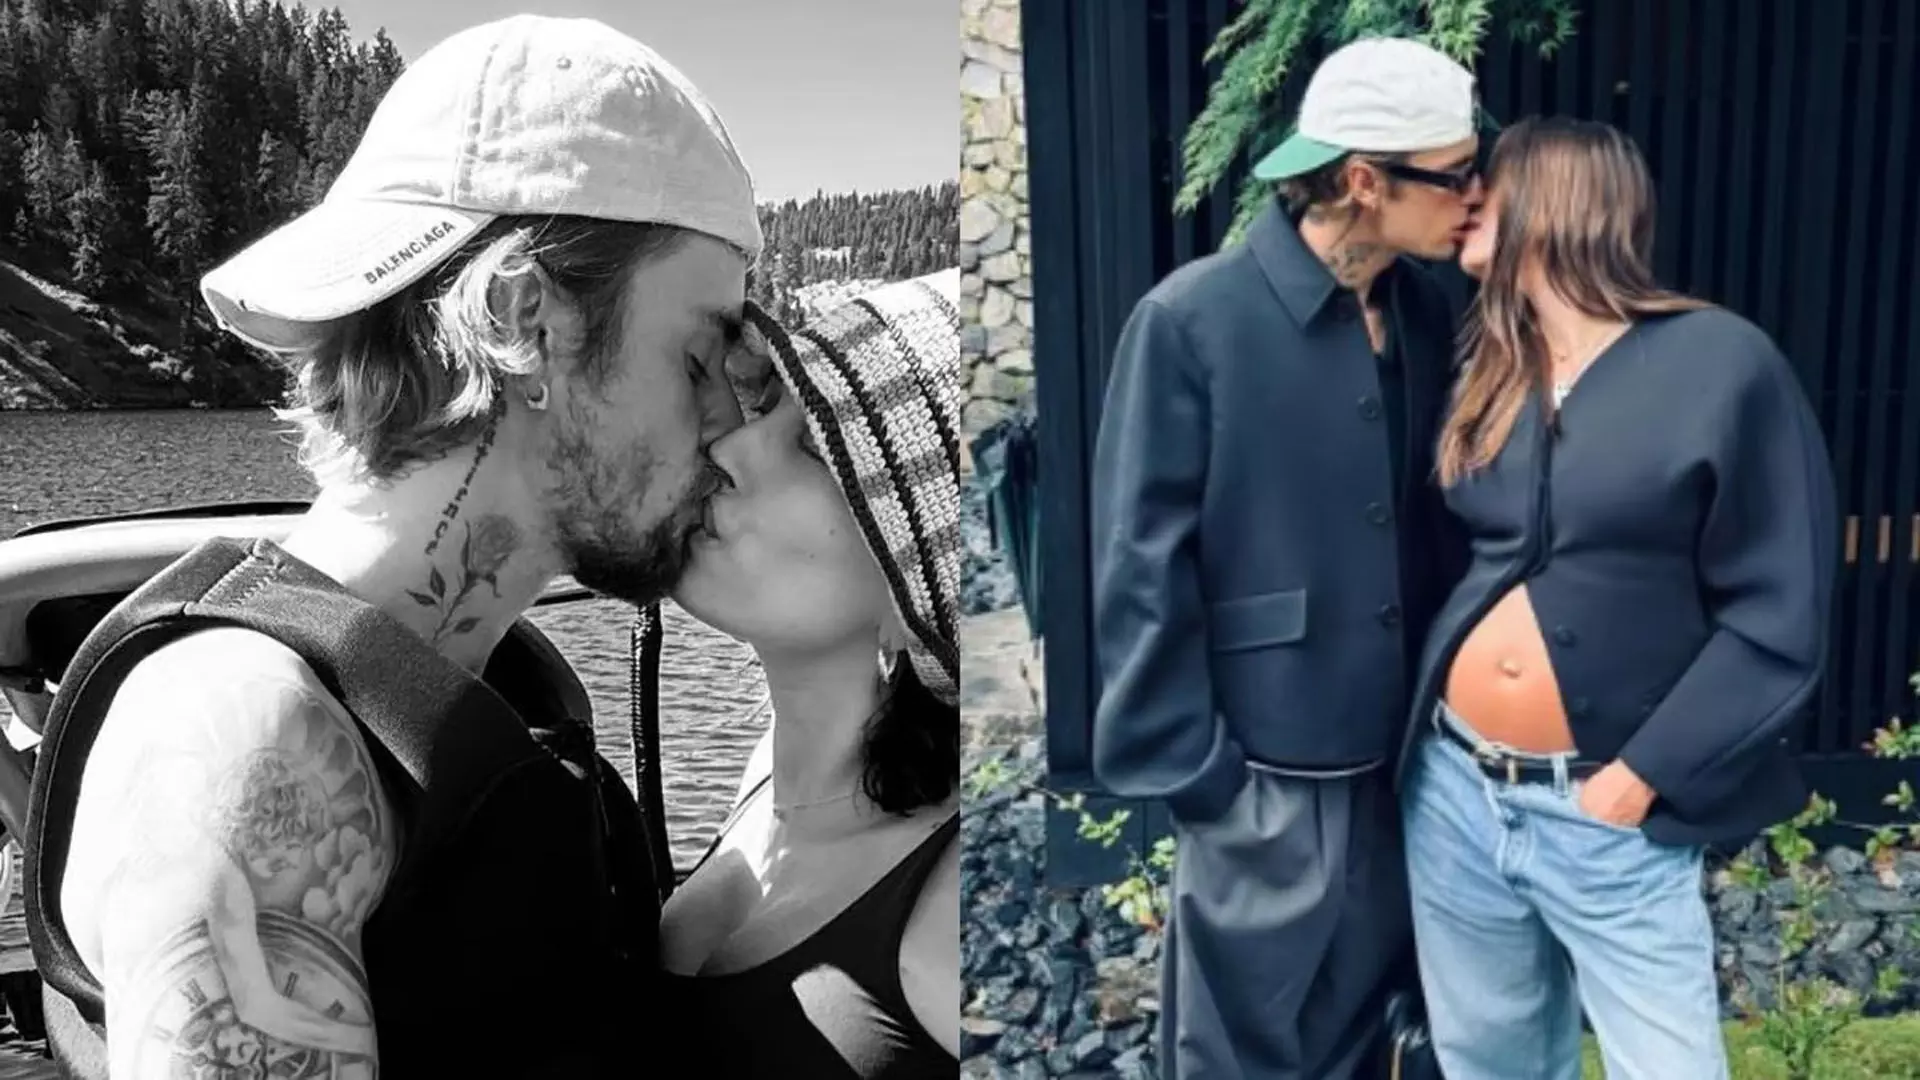 Justin Bieber ने पत्नी हैली बीबर को किया किस, उनके बेबी बंप को गोद में लिया, देखें तस्वीरें